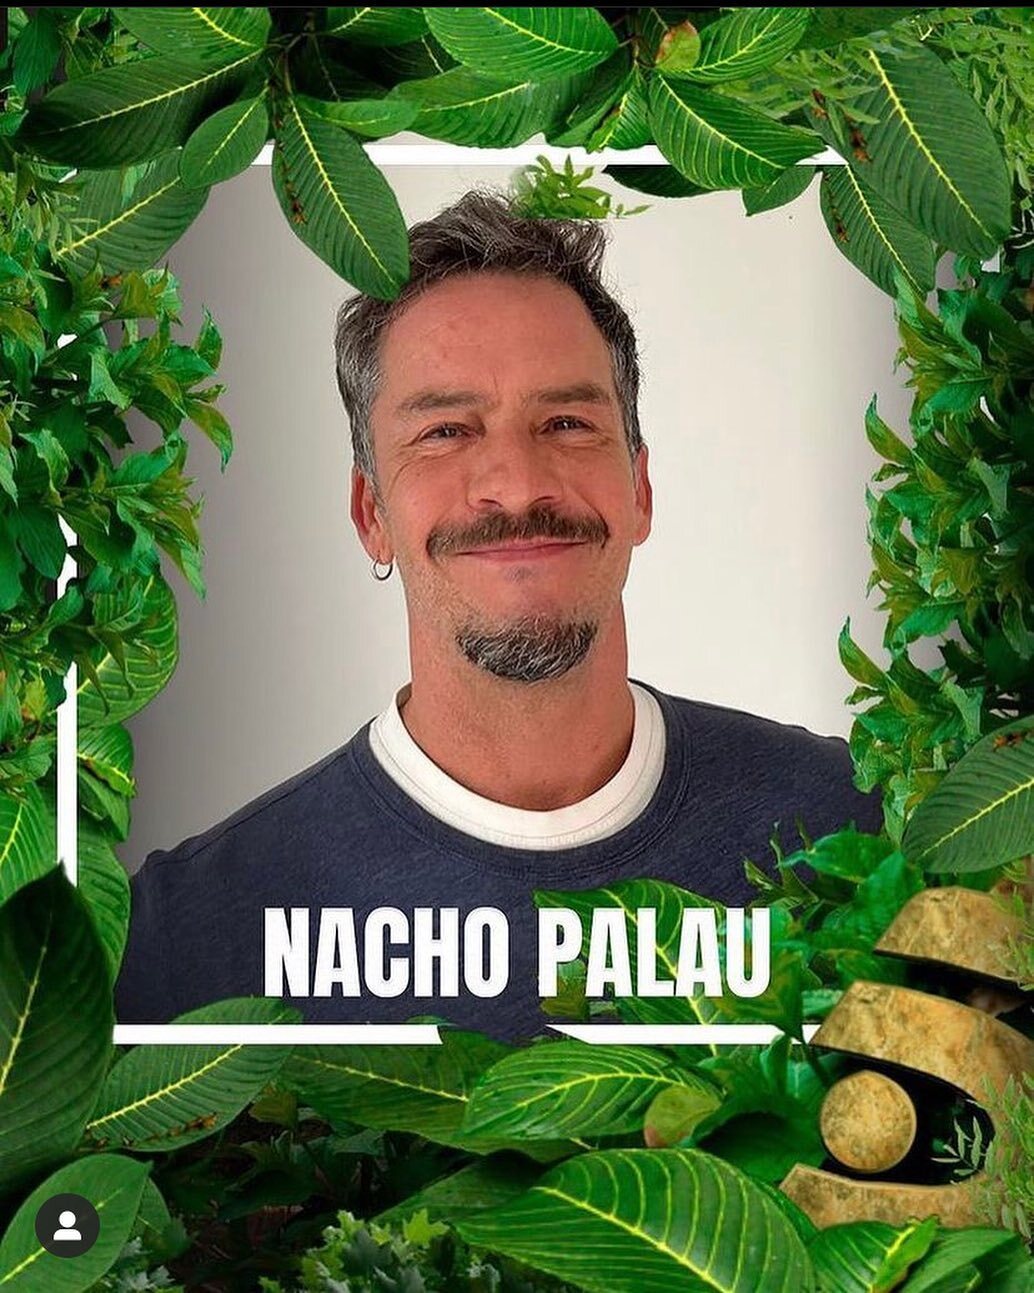 Nacho Palau, concursante confirmado | Instagram